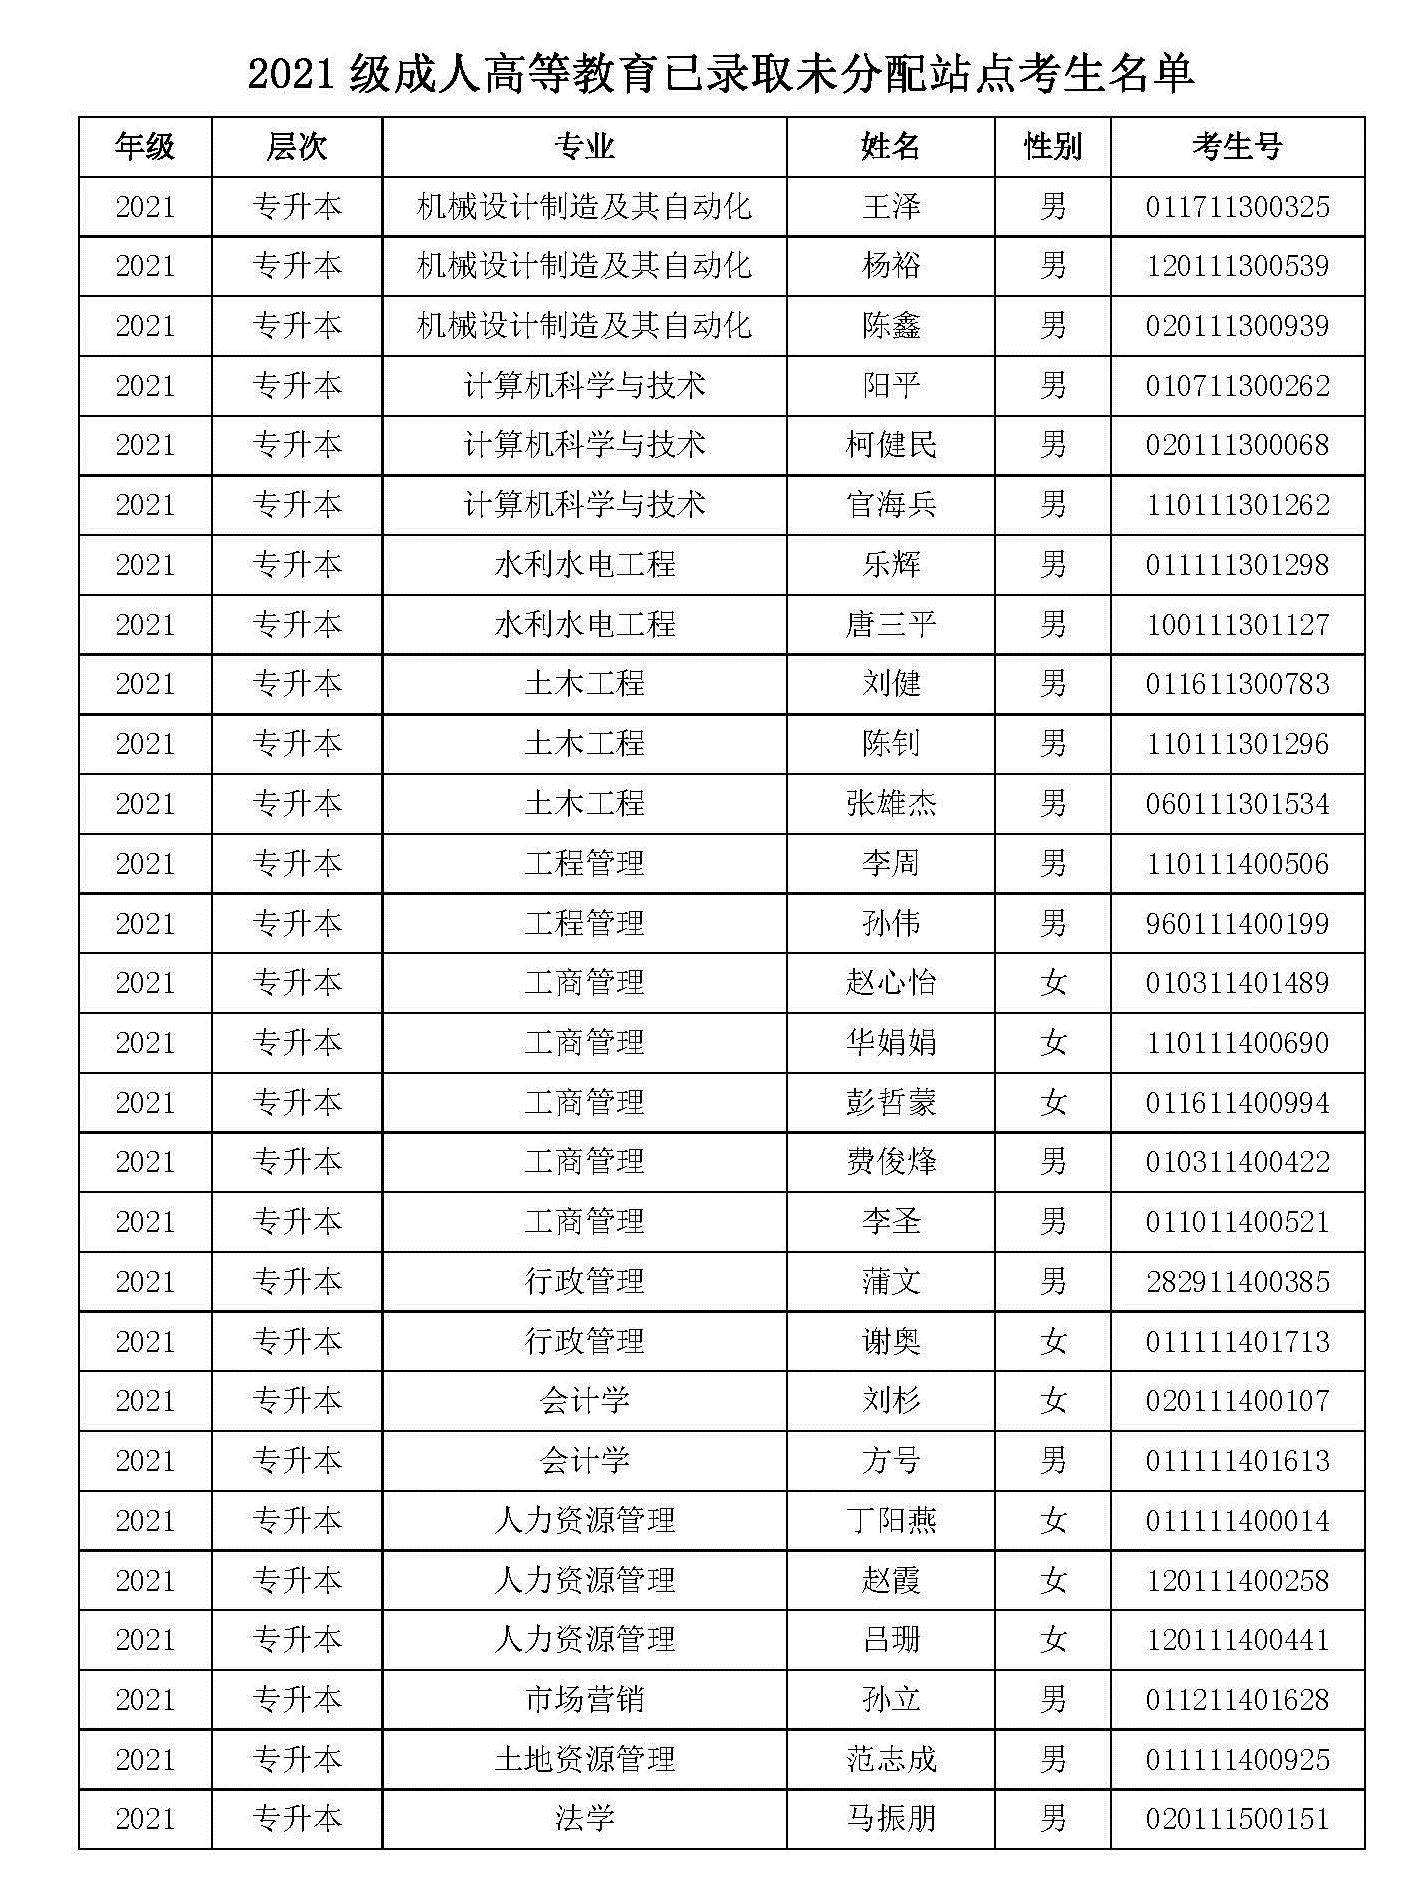 2021级华中农业大学成教已录取未分配站点学生名单公示